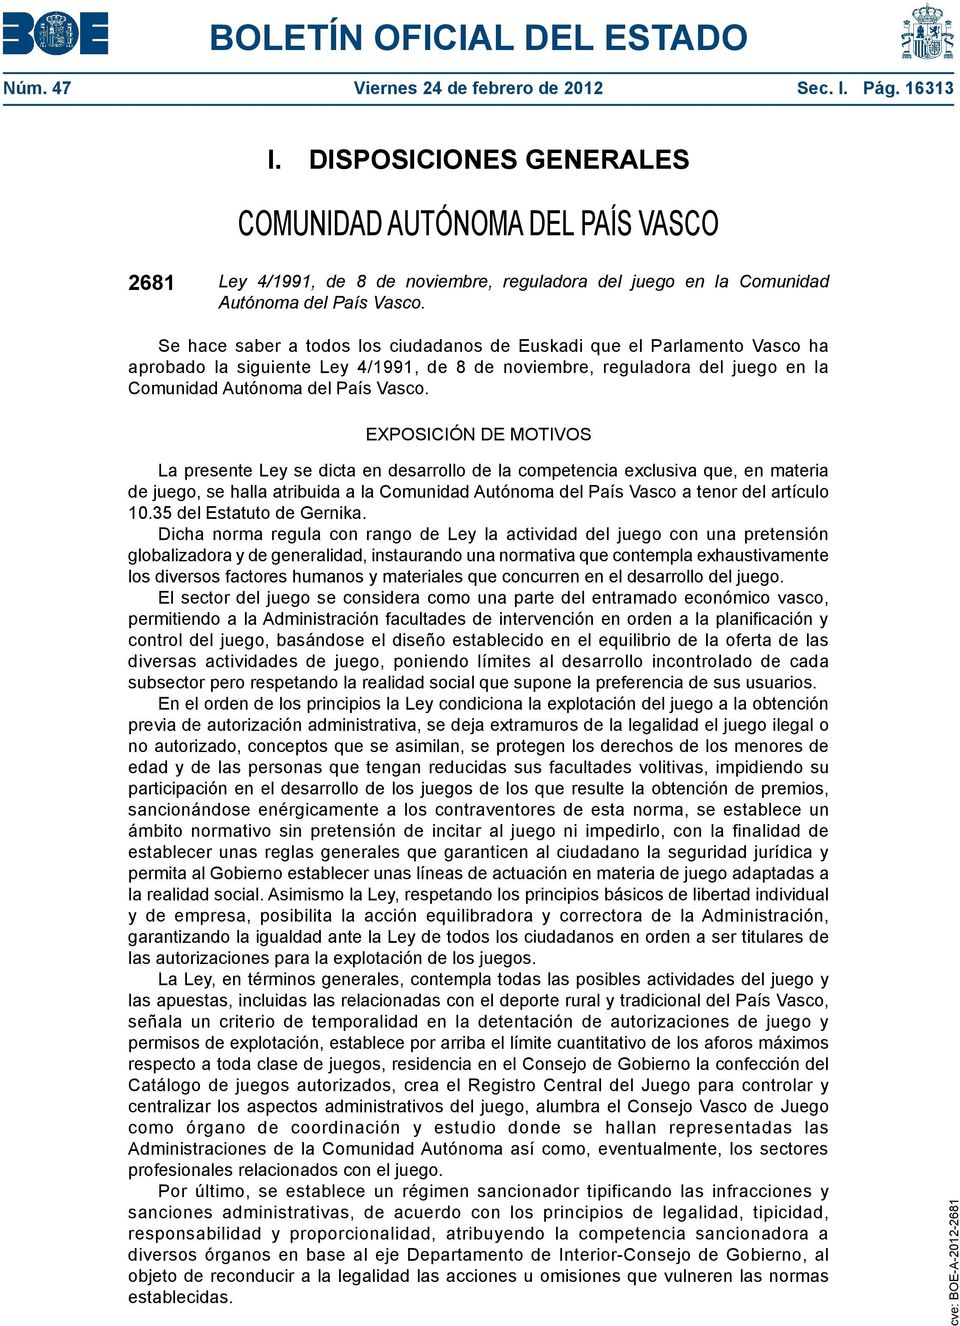 Se hace saber a todos los ciudadanos de Euskadi que el Parlamento Vasco ha aprobado la siguiente Ley 4/1991, de 8 de noviembre, reguladora del juego en la Comunidad Autónoma del País Vasco.